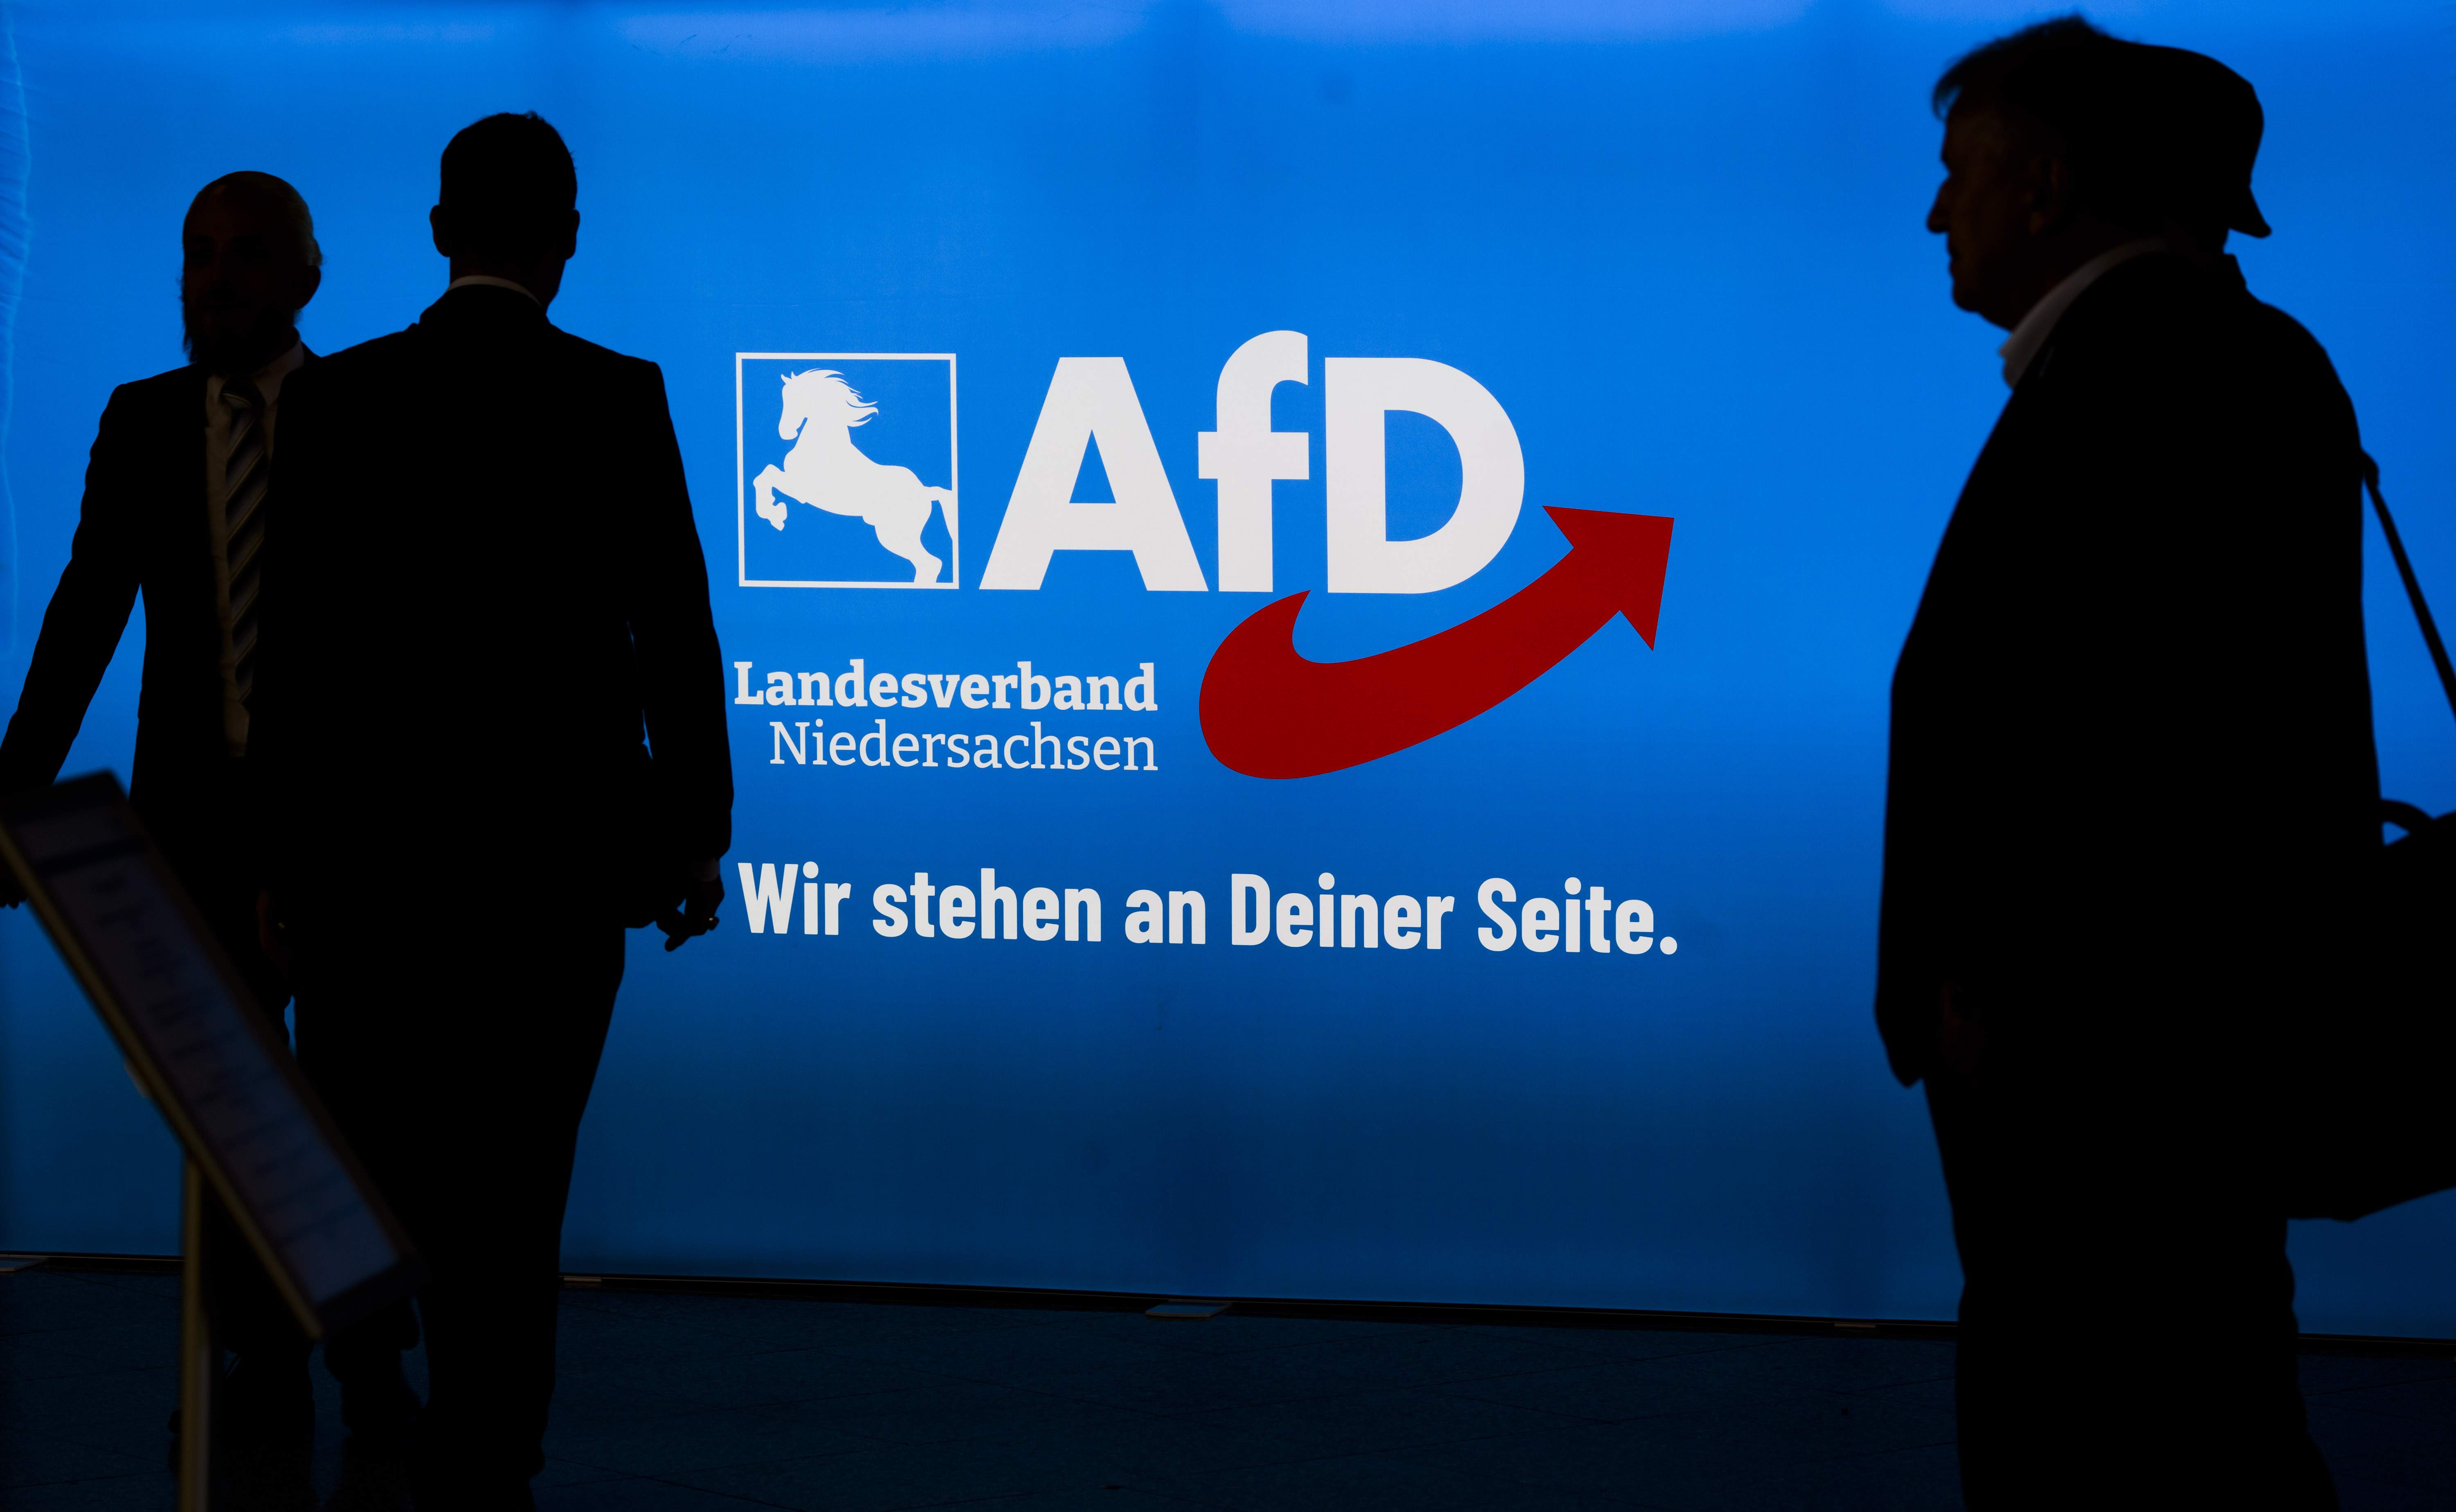 Nuevo ataque con cuchillo a un político de extrema derecha en Alemania: herido Heinrich Koch (AfD)